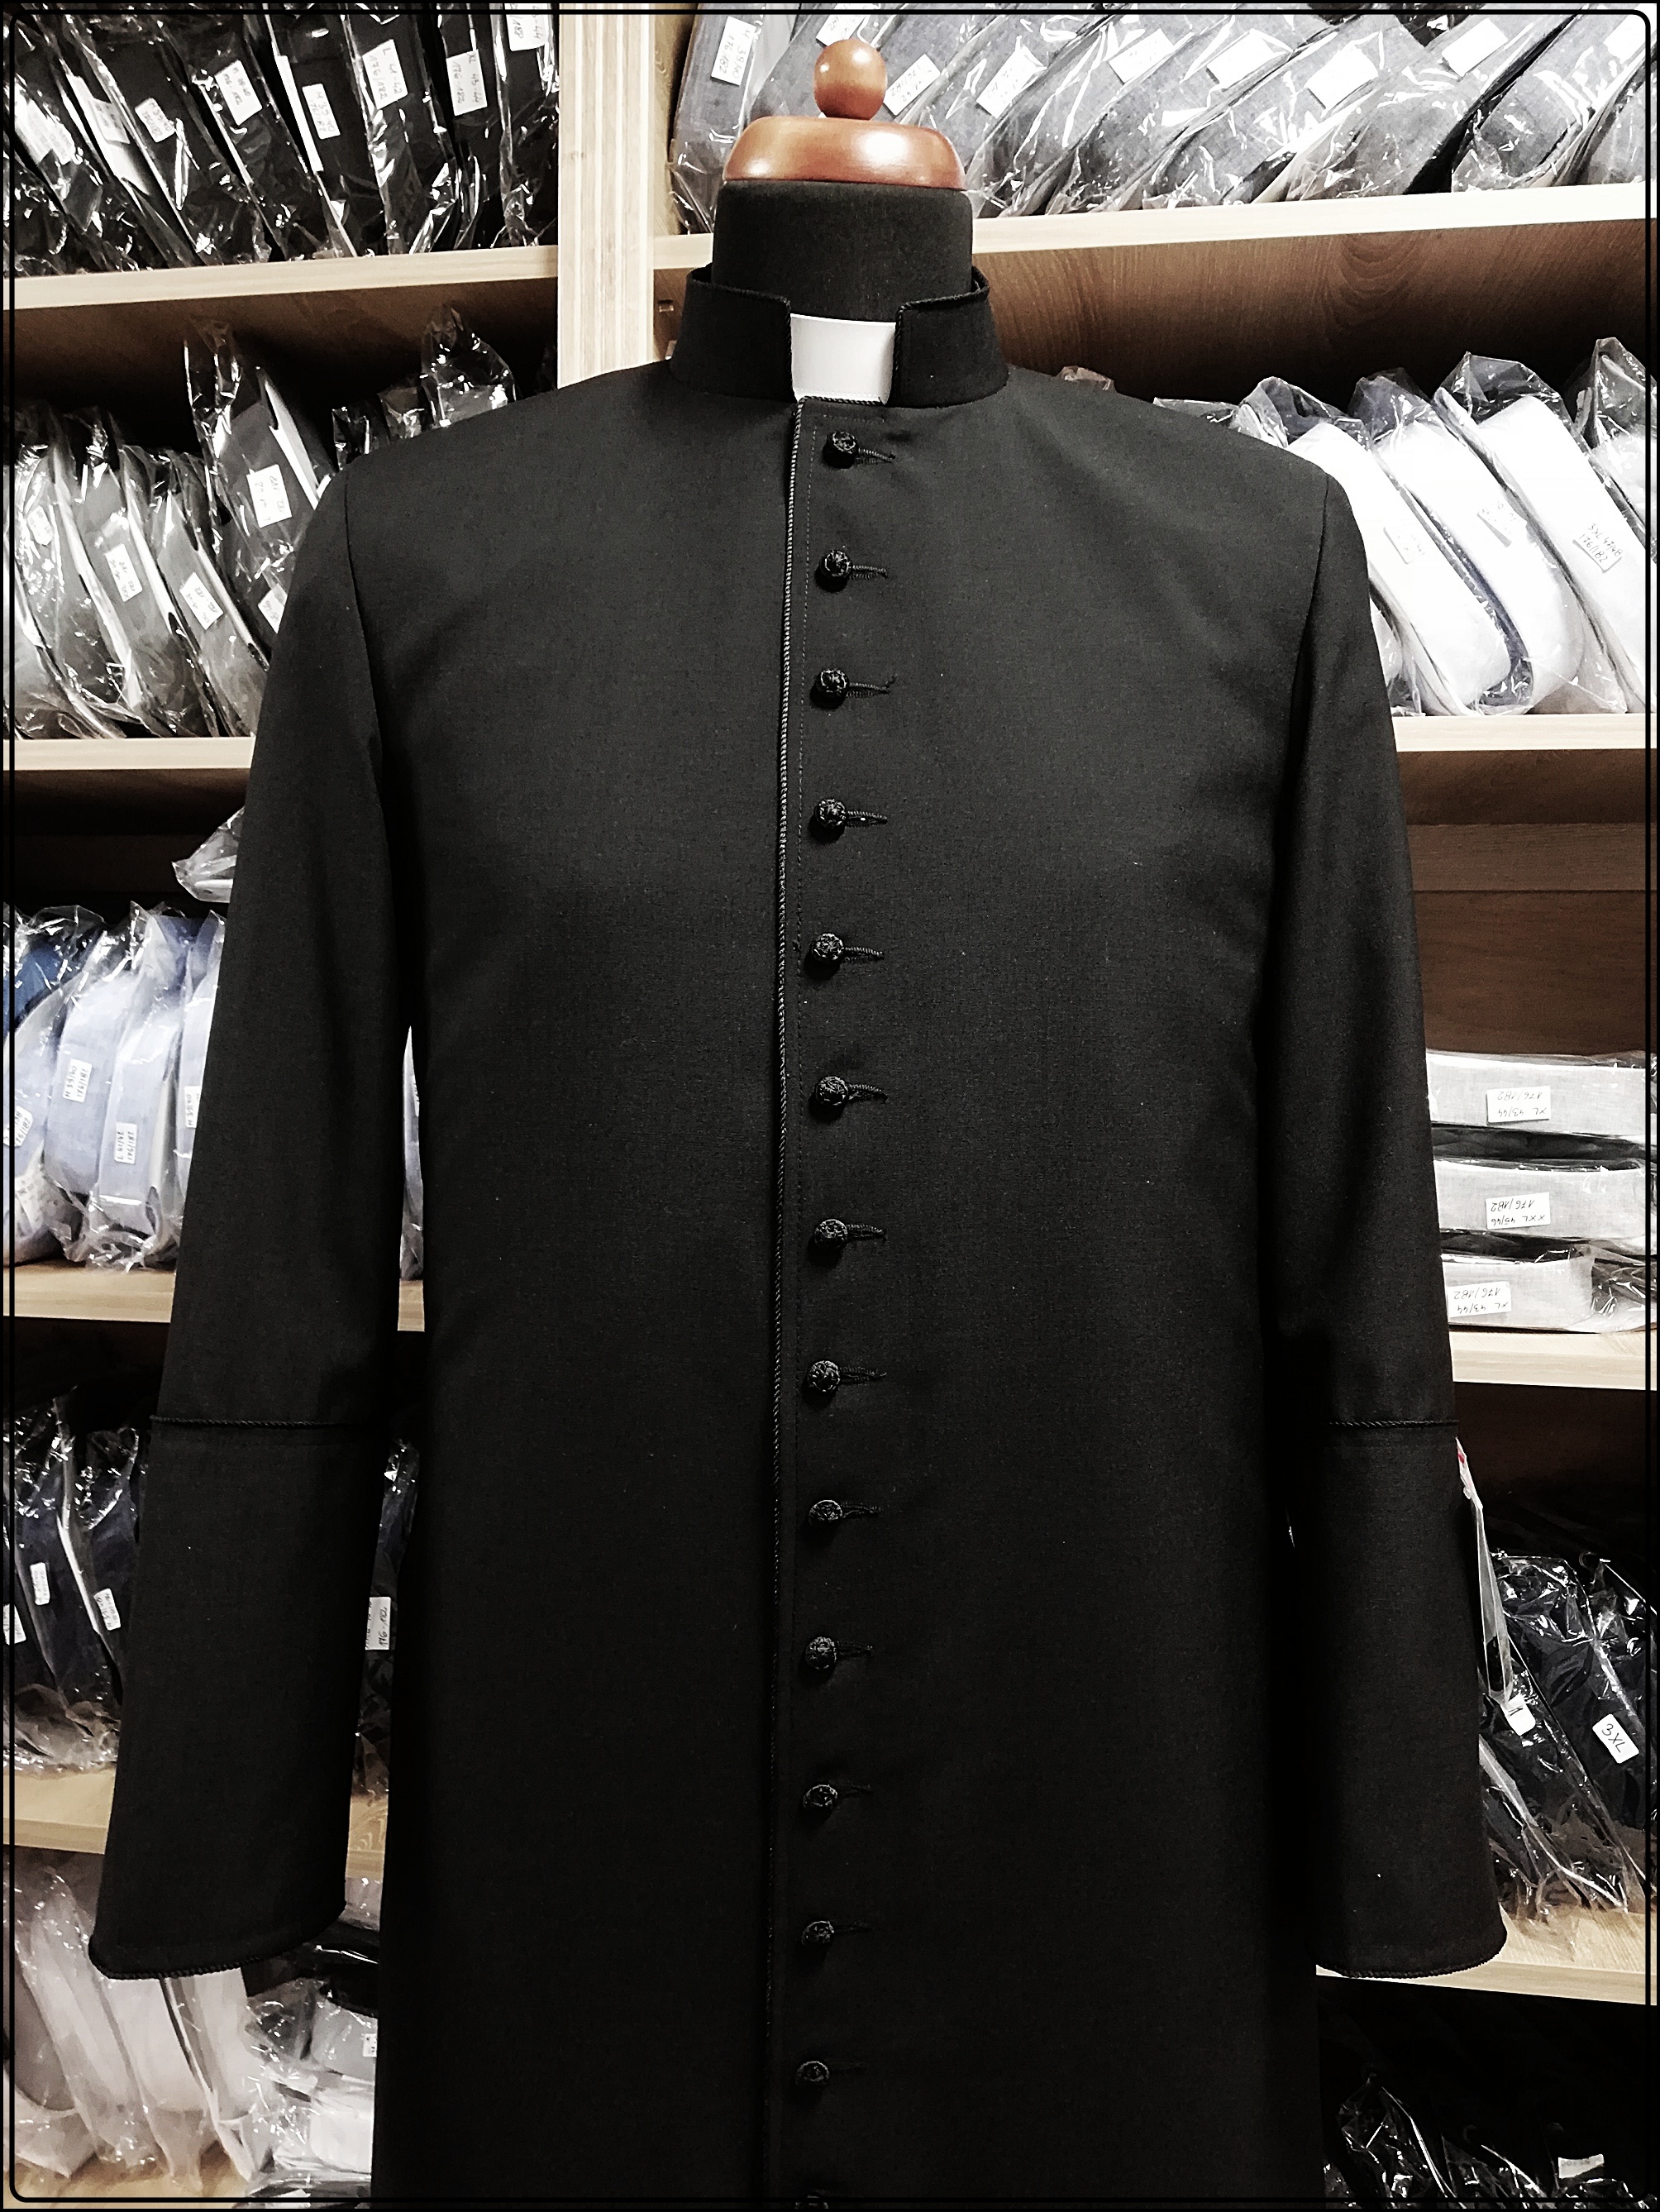 sutanny dla księży,szaty liturgiczne,odzież kapłańska